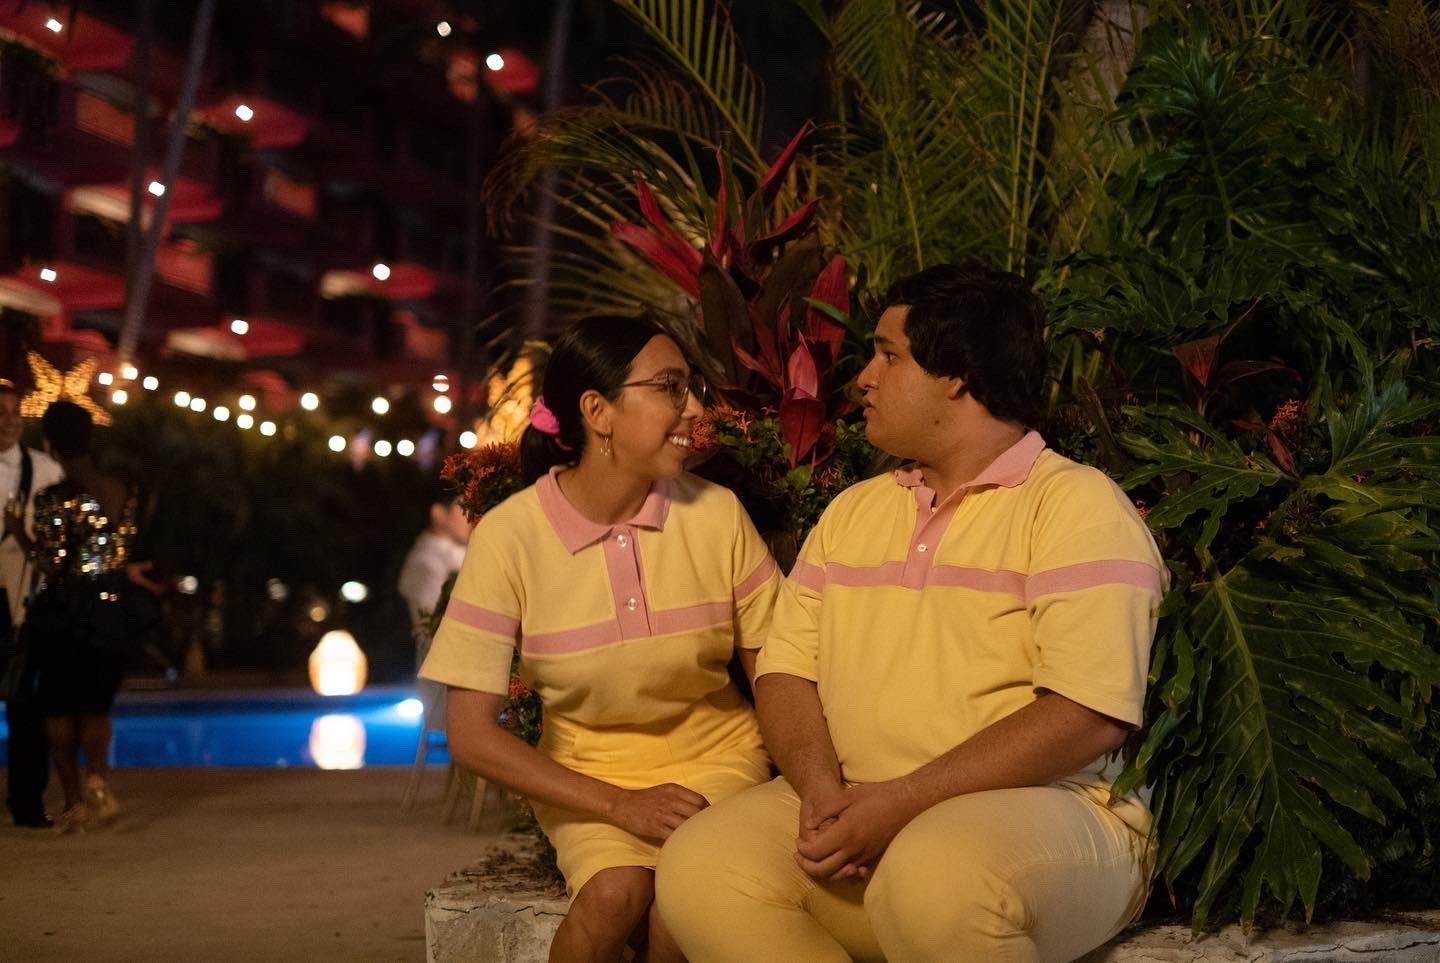 Lorena y Memo, personajes de la serie Acapulco, sentados juntos en una banca, luciendo polos a juego y pantalones color crema, mirándose el uno al otro